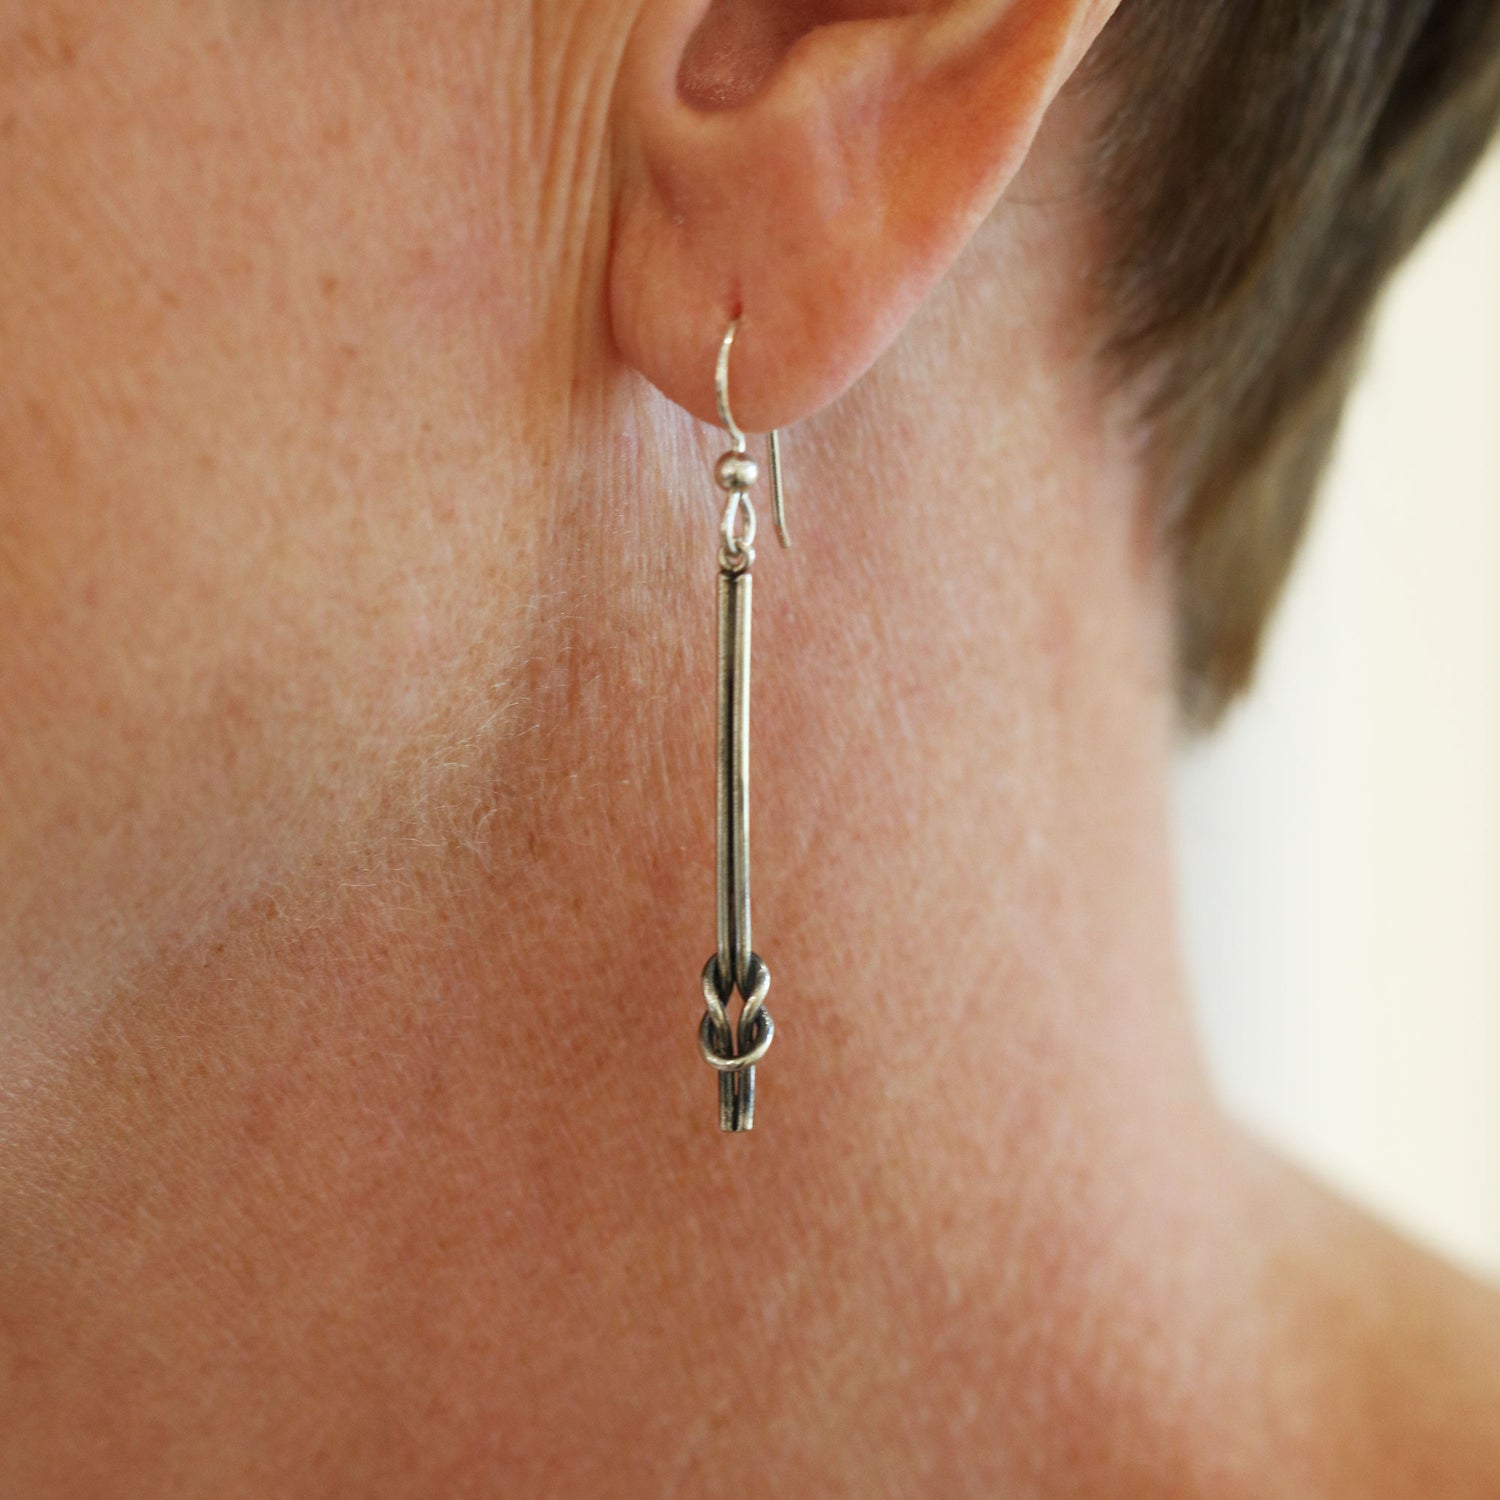 RÅBANDSKNOP (Reef Knot) earrings